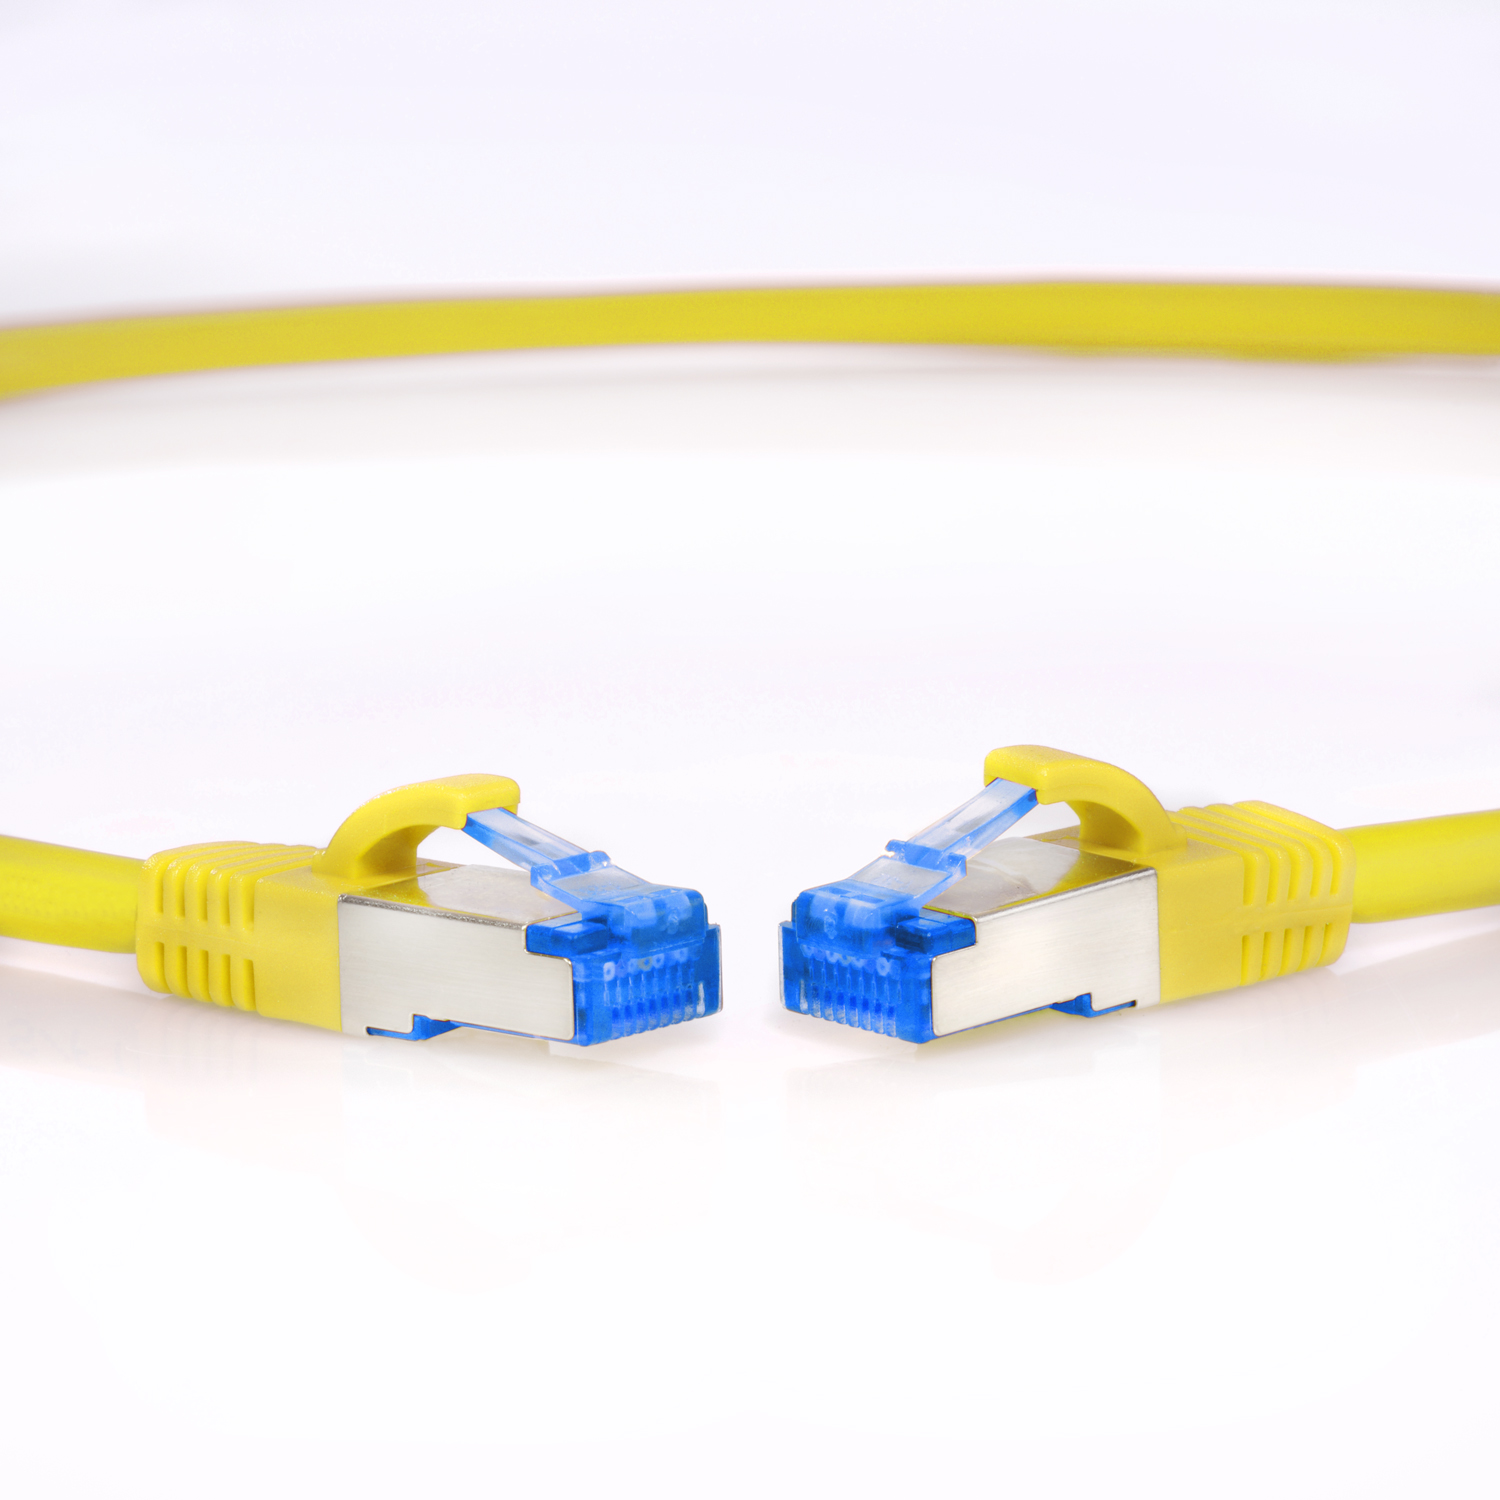 S/FTP gelb, / m Netzwerkkabel, Patchkabel 10m 10GBit, Netzwerkkabel TPFNET 10